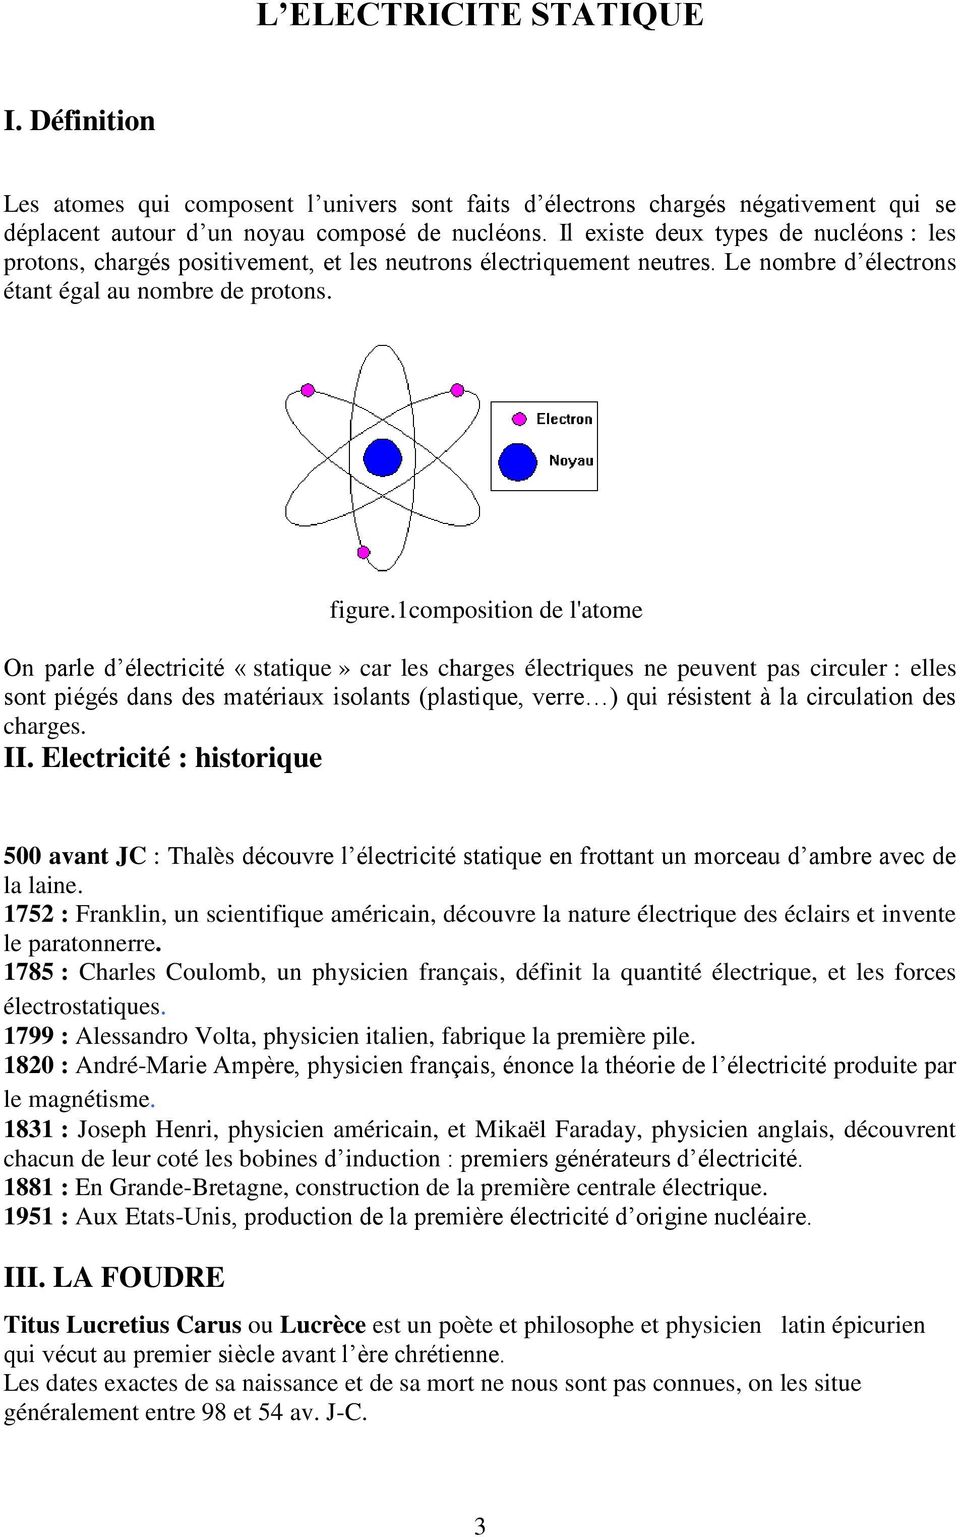 1composition de l'atome On parle d électricité «statique» car les charges électriques ne peuvent pas circuler : elles sont piégés dans des matériaux isolants (plastique, verre ) qui résistent à la